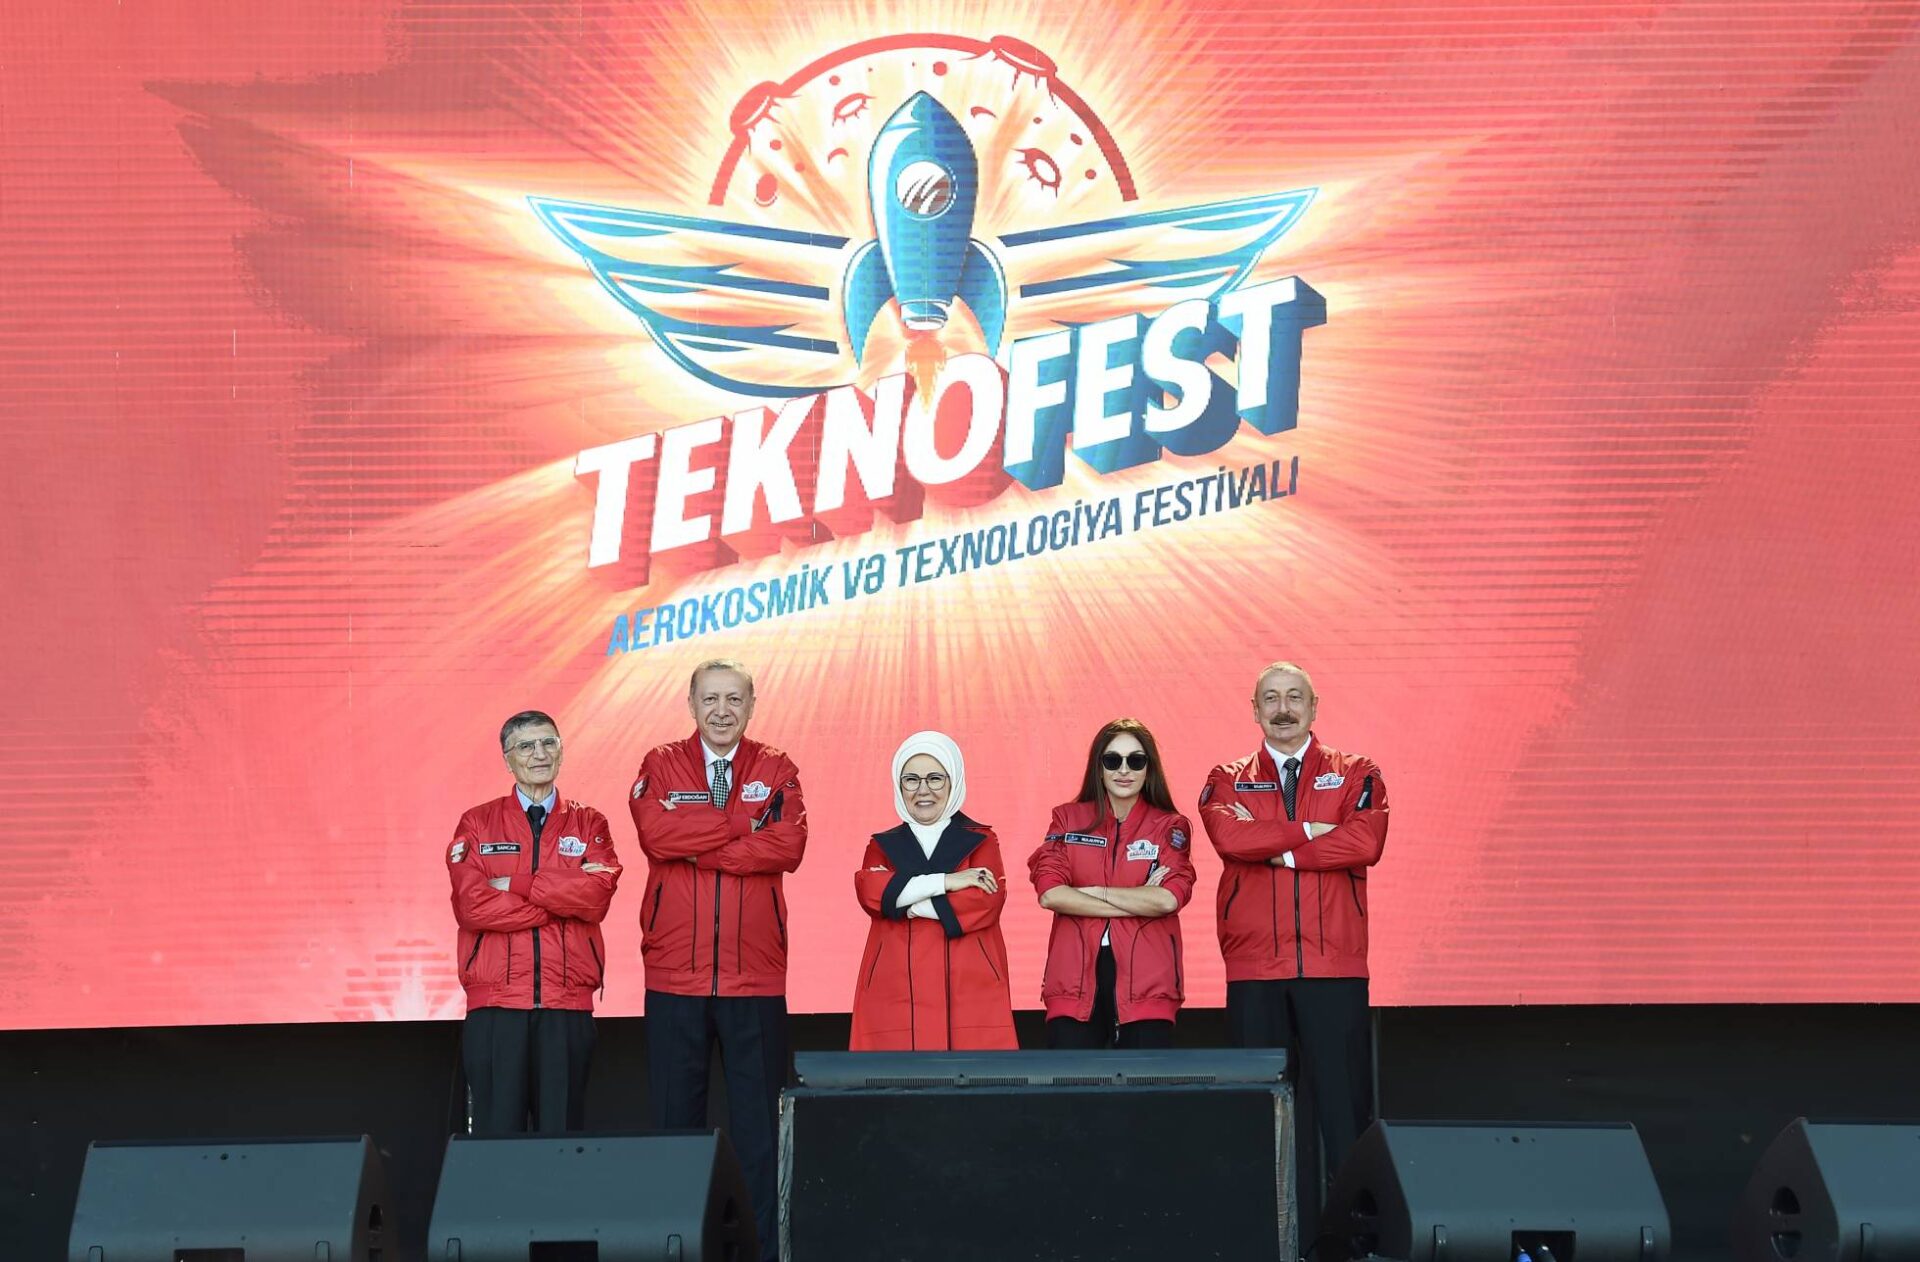 Ilham Aliyev und Recep Tayyip Erdogan besuchten das TEKNOFEST Aserbaidschan Festival in Baku